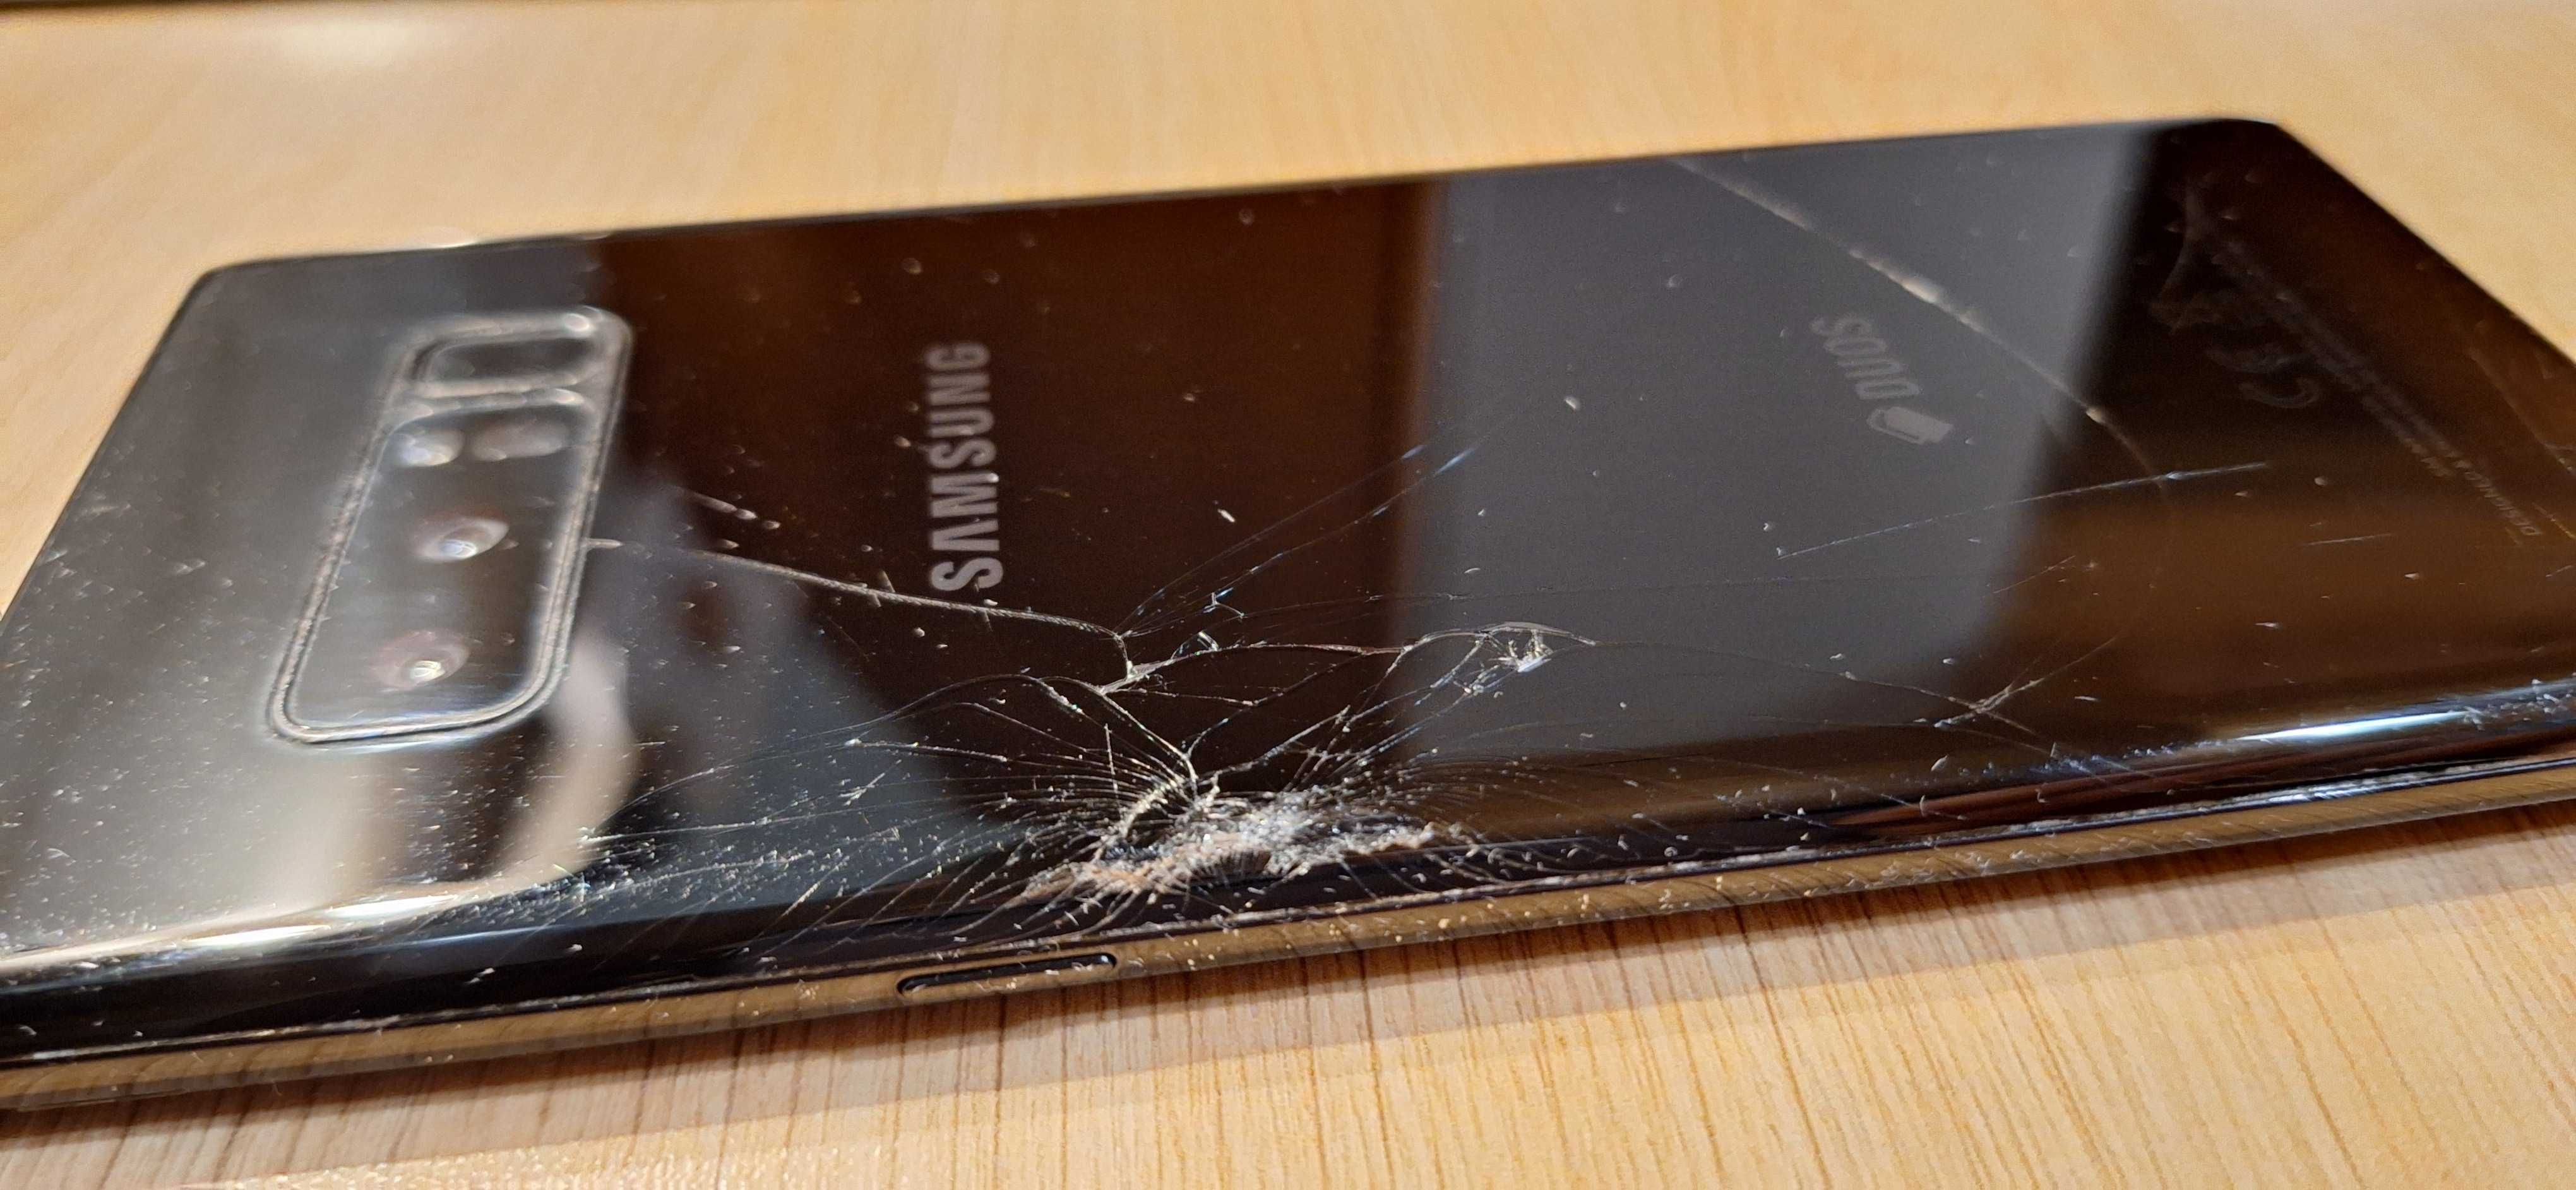 Samsung Galaxy Note 8 - 64GB